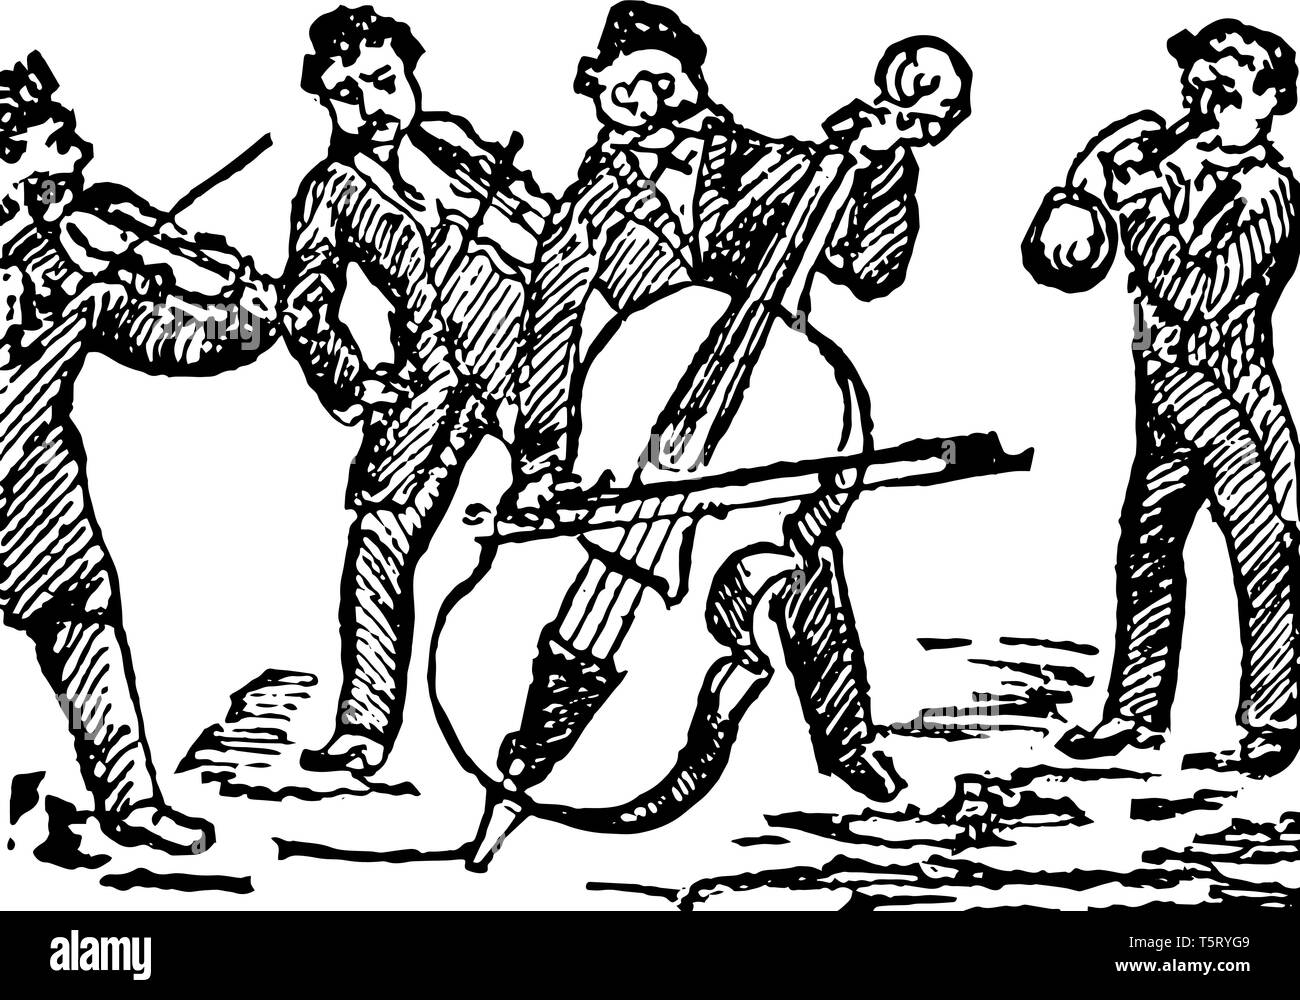 Quartett, wo der Satz von vier Personen, die ein Stück Musik in vier Teile durchführen, vintage Strichzeichnung oder Gravur Abbildung. Stock Vektor